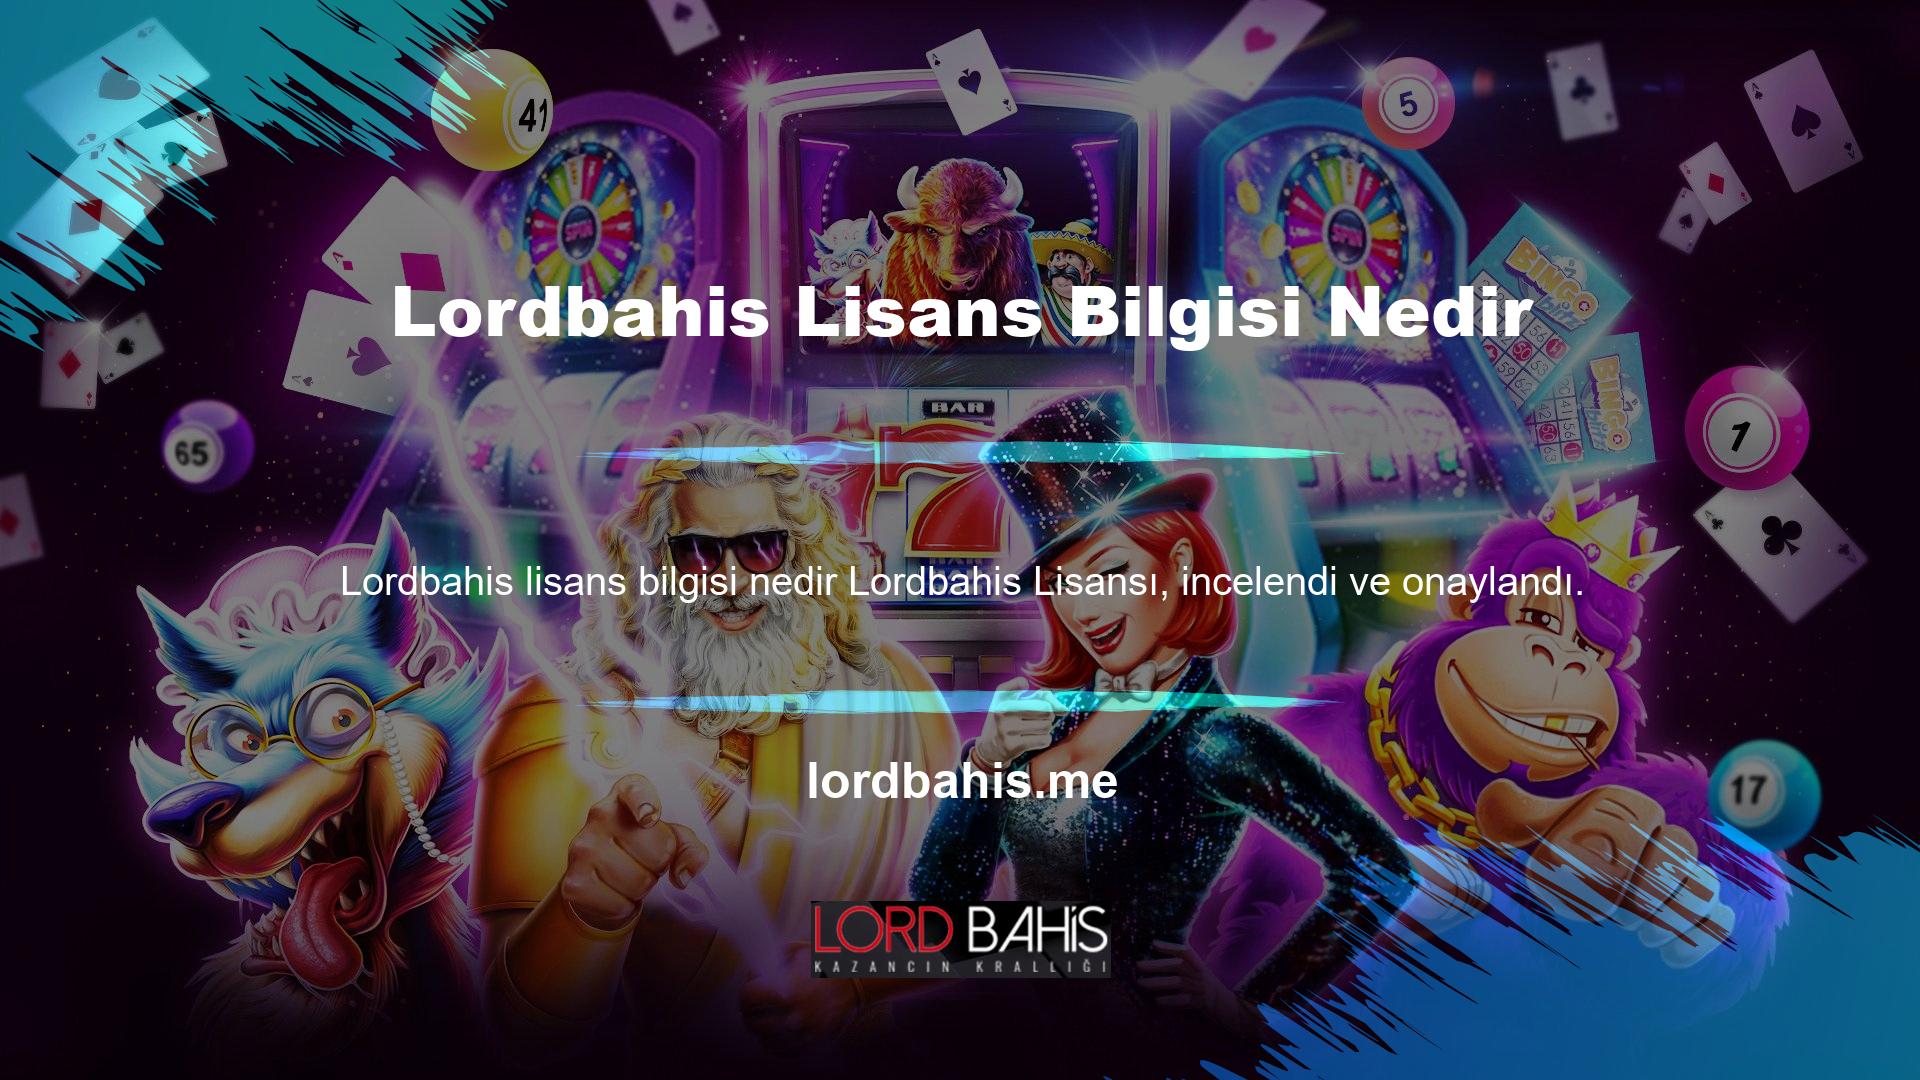 Lordbahis casino pazarında güvenliği ve kalitesi ile tanınan şirketlerden biridir